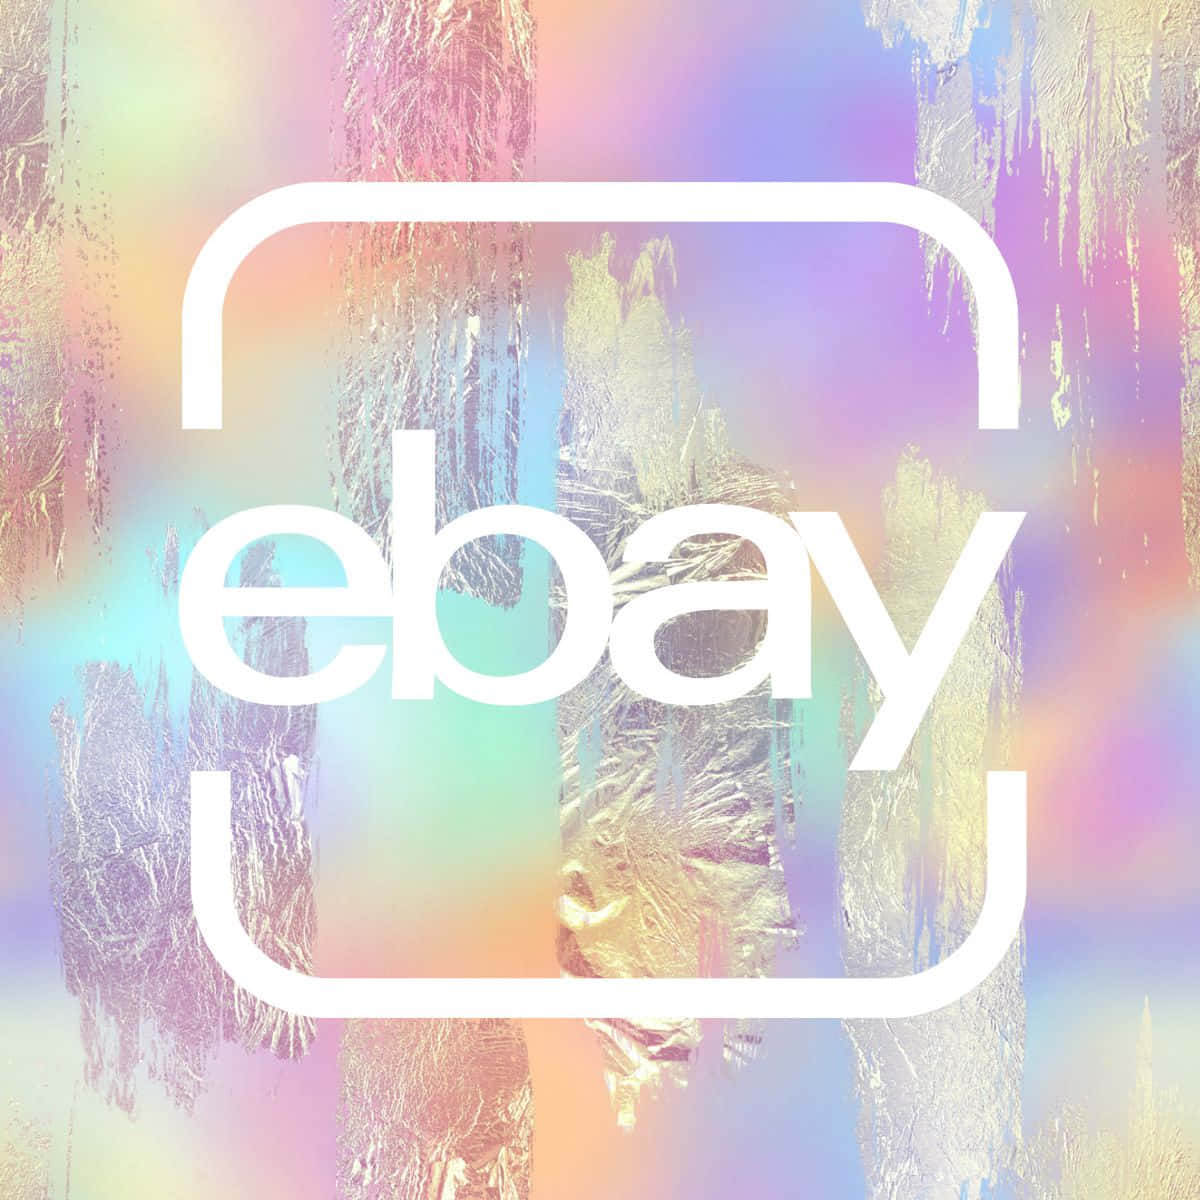 Logotipode Ebay Uk En Celofán Arcoíris Fondo de pantalla